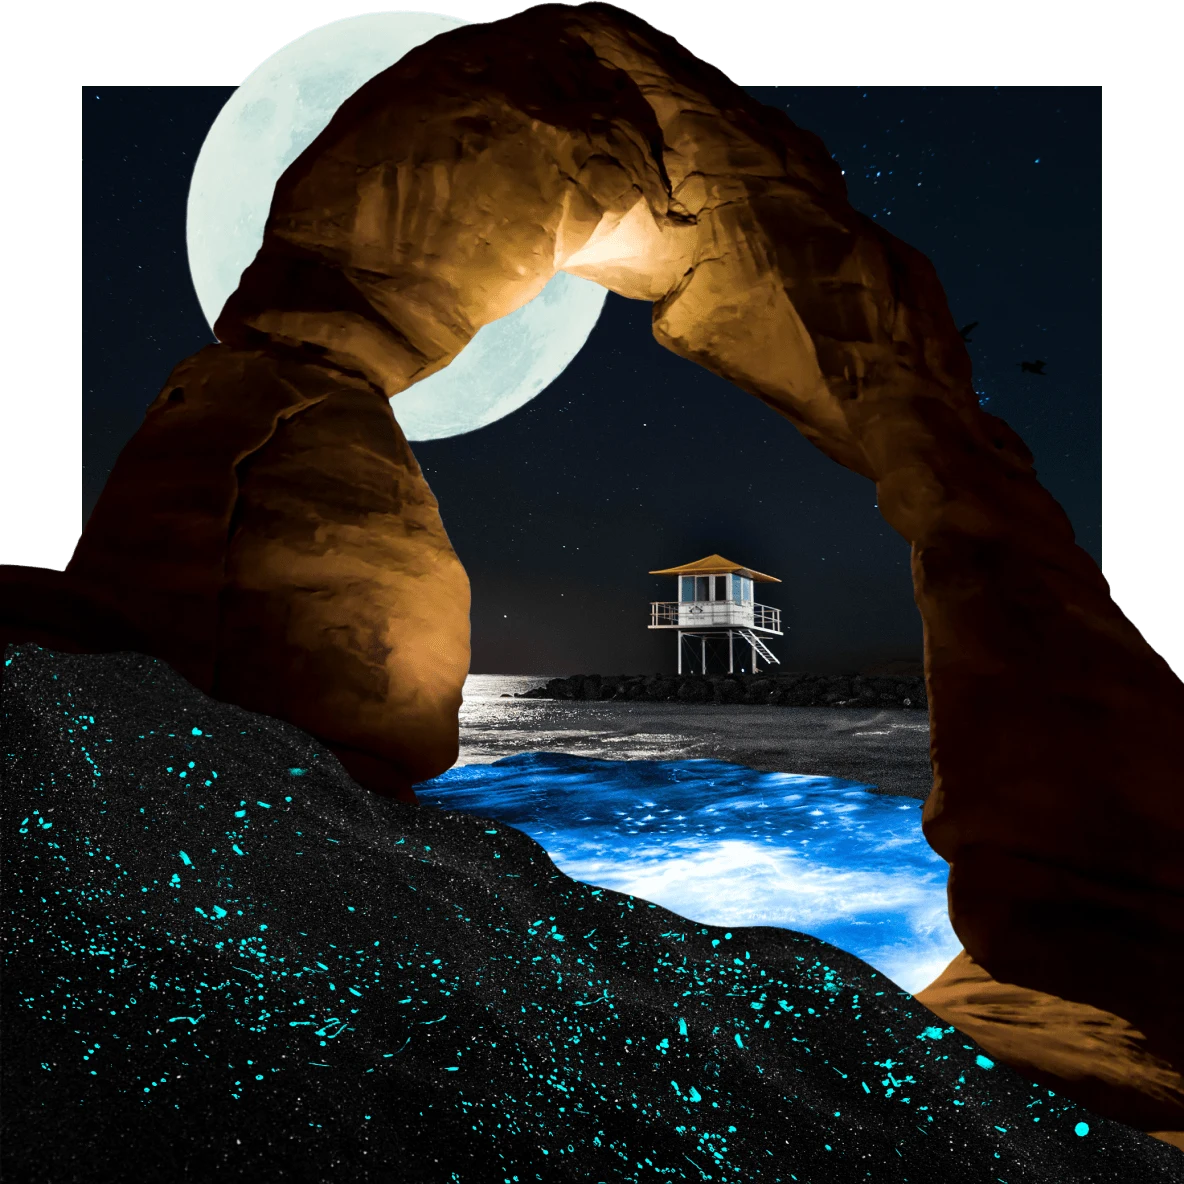 Uno specchio d'acqua scintillante sotto un arco in pietra rossa. Sullo sfondo, la luna piena si staglia sopra una torretta sulla spiaggia da cui parte una scala che scende fino agli scogli. In primo piano, delle macchioline blu fosforescenti su delle onde scure.